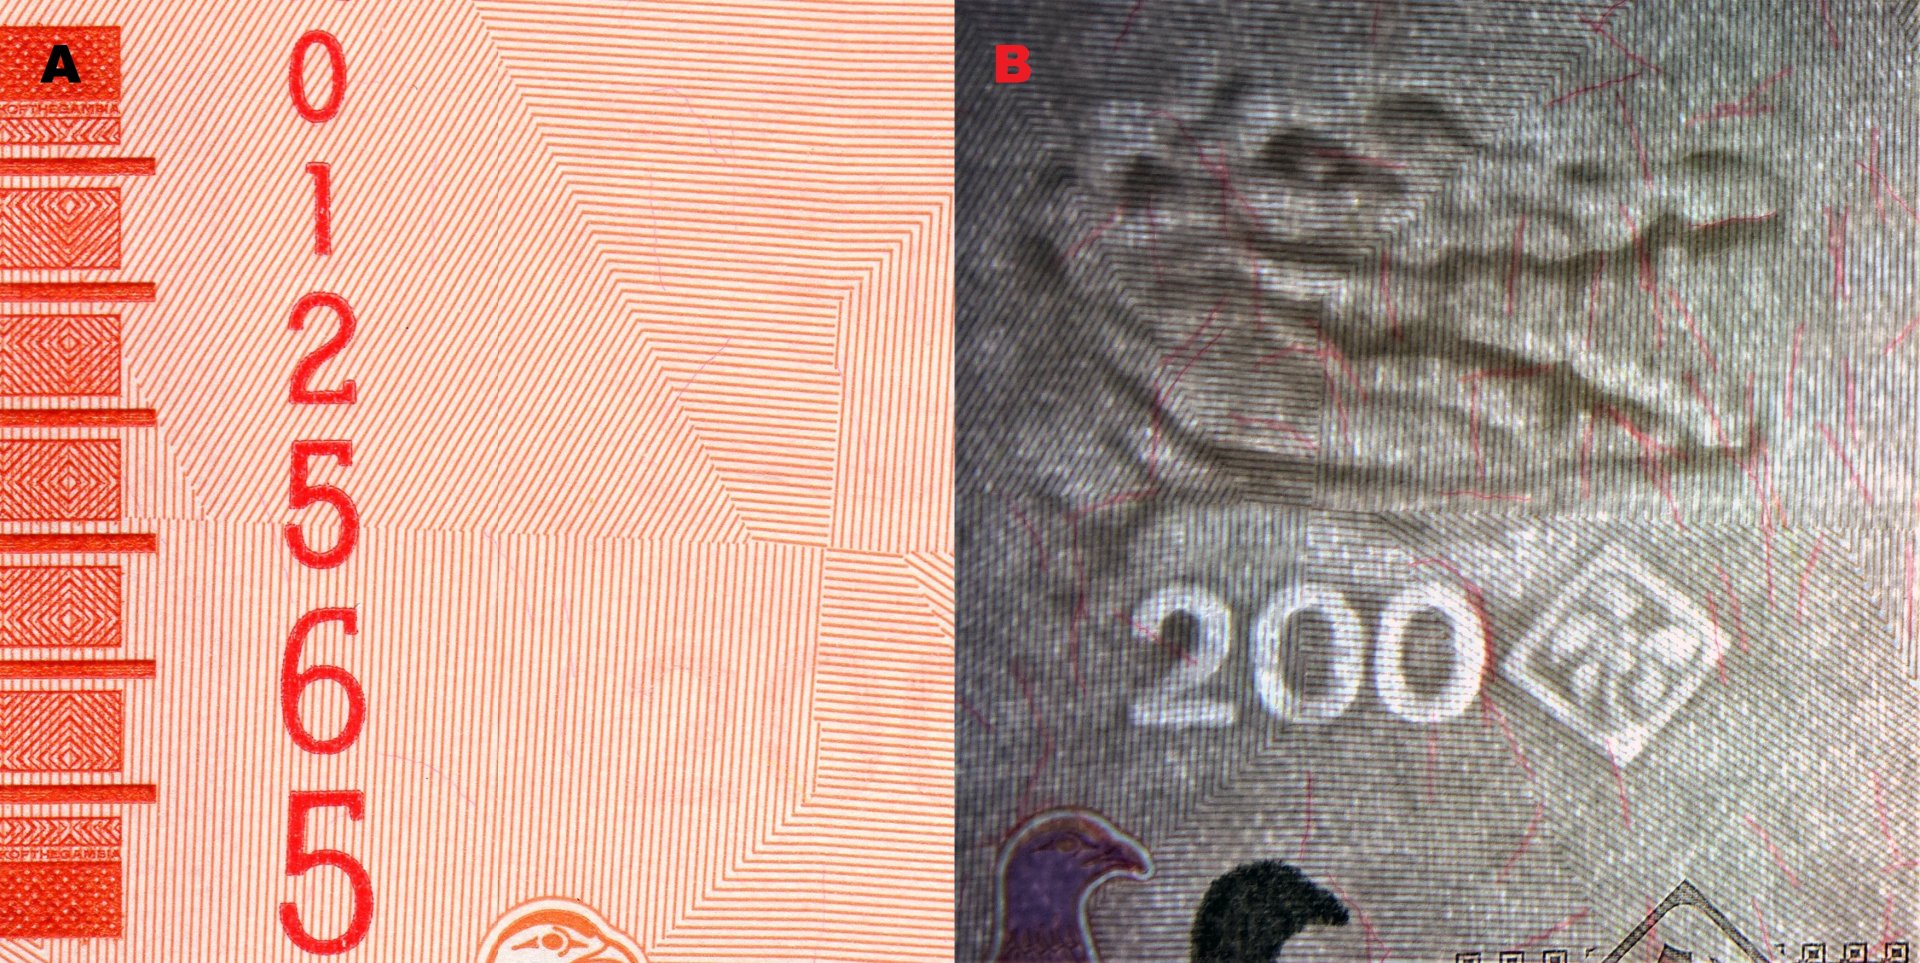 Obr.1. A) Hmatová značka pro nevidomé na levém okraji. B) Nominální obrazový vodoznak vpravo hledící hlavy krokodýla s otevřenou tlamou, kosočtverec s palmou a nominál "200" (elektrotyp). Difuzně četná červená bezpečnostní vlákna